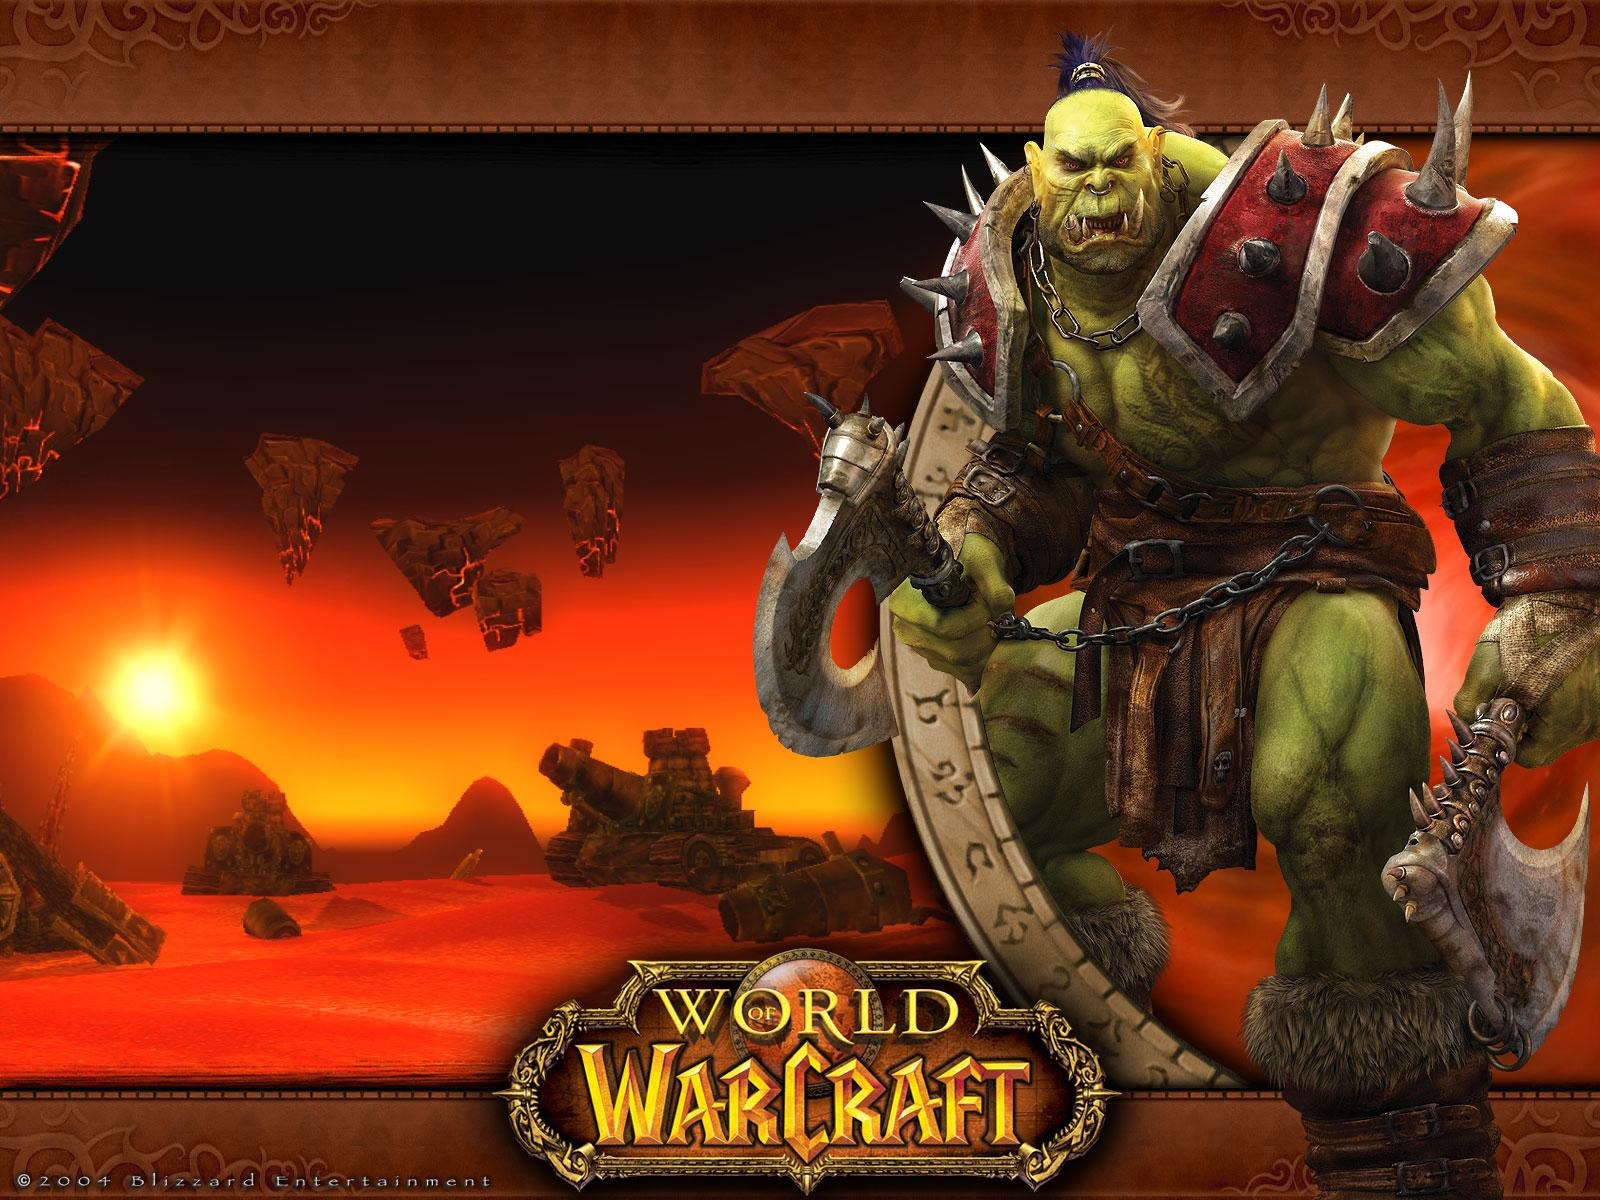 World of Warcraft 魔獸世界高清壁紙(二) #16 - 1600x1200